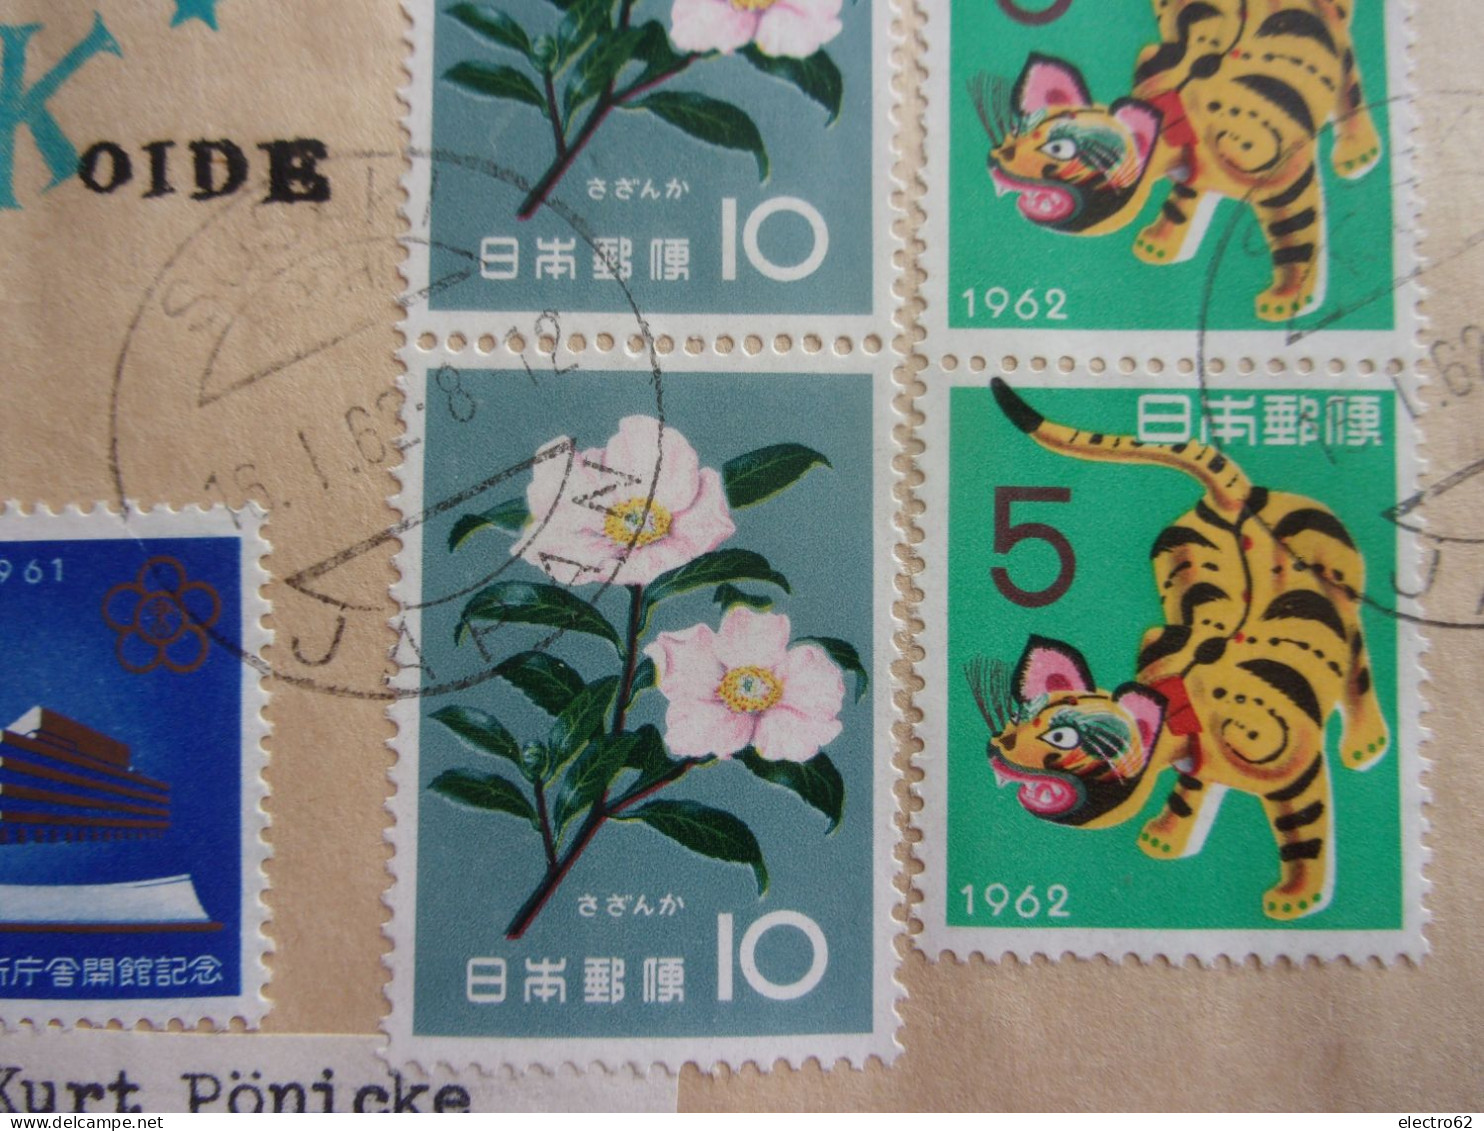 Japon Susaki P.O.BOX2 Kotiken Japan turuko Koide camélia tigre librairie de la diète tiger flower 1961 1962